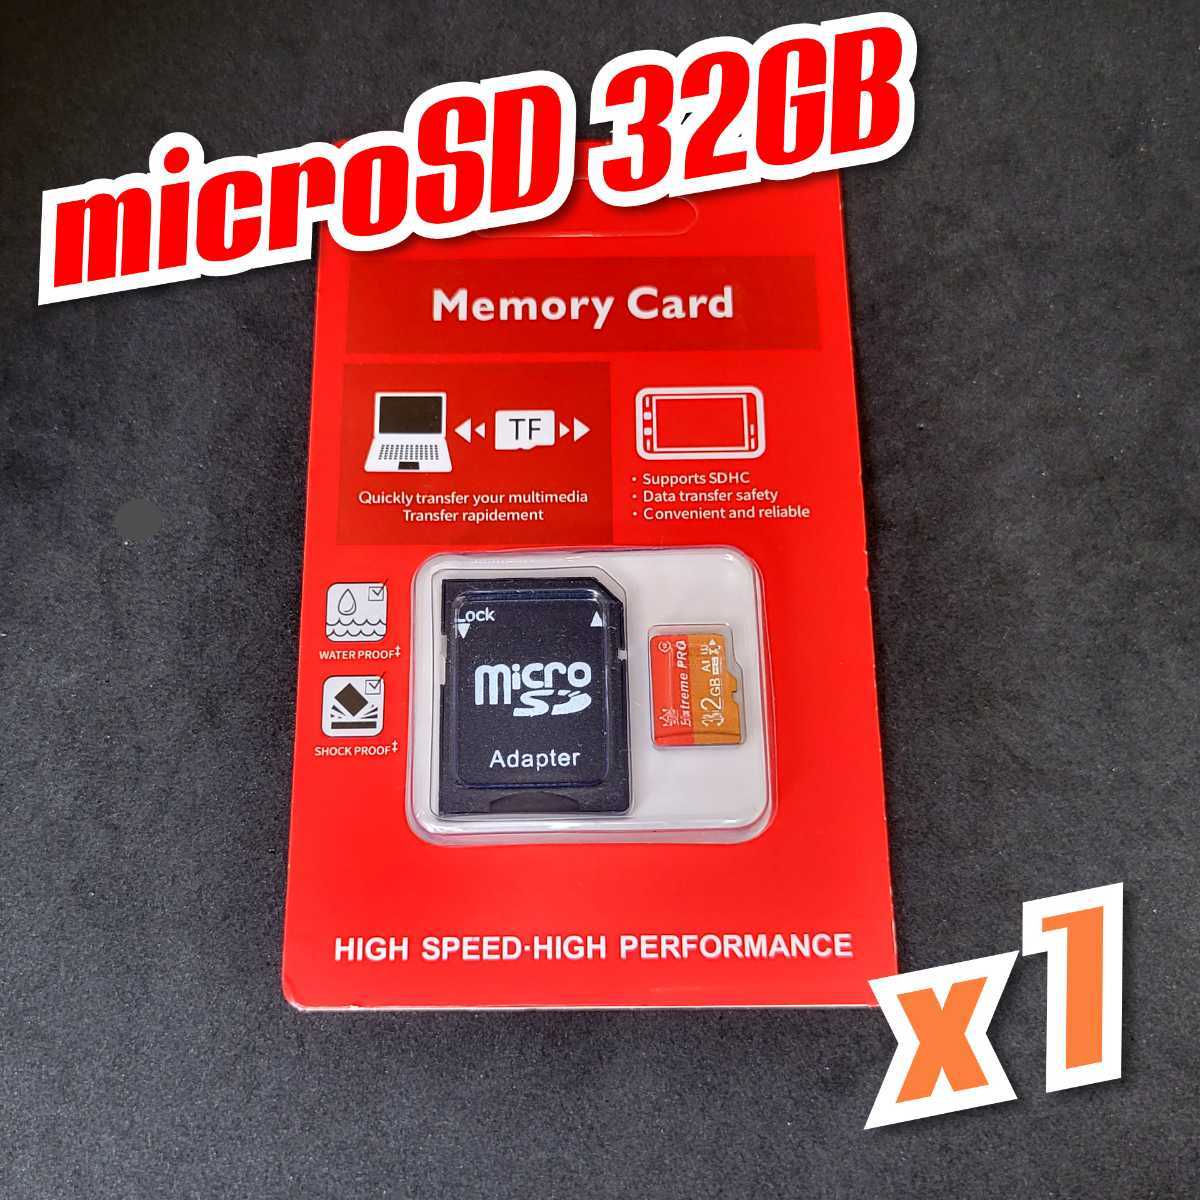 【送料無料】マイクロSDカード 32GB 1枚 class10 UHS-I 1個 microSD microSDHC マイクロSD EXTREME PRO 32GB RED-GOLD_画像2